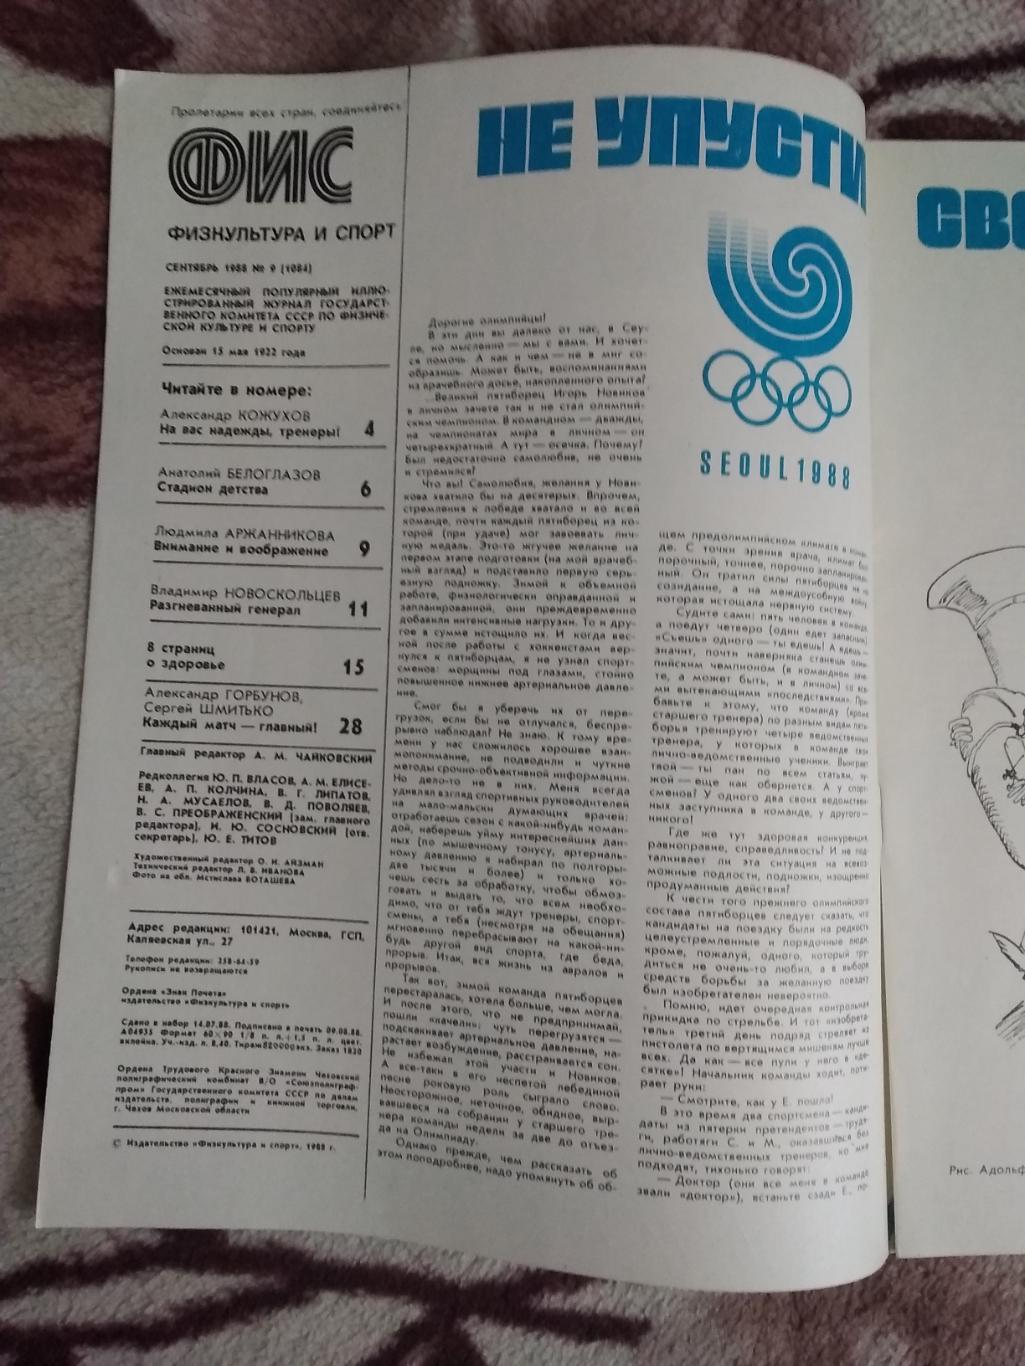 Журнал.Физкультура и спорт № 9 1988 г. (ФиС). 1